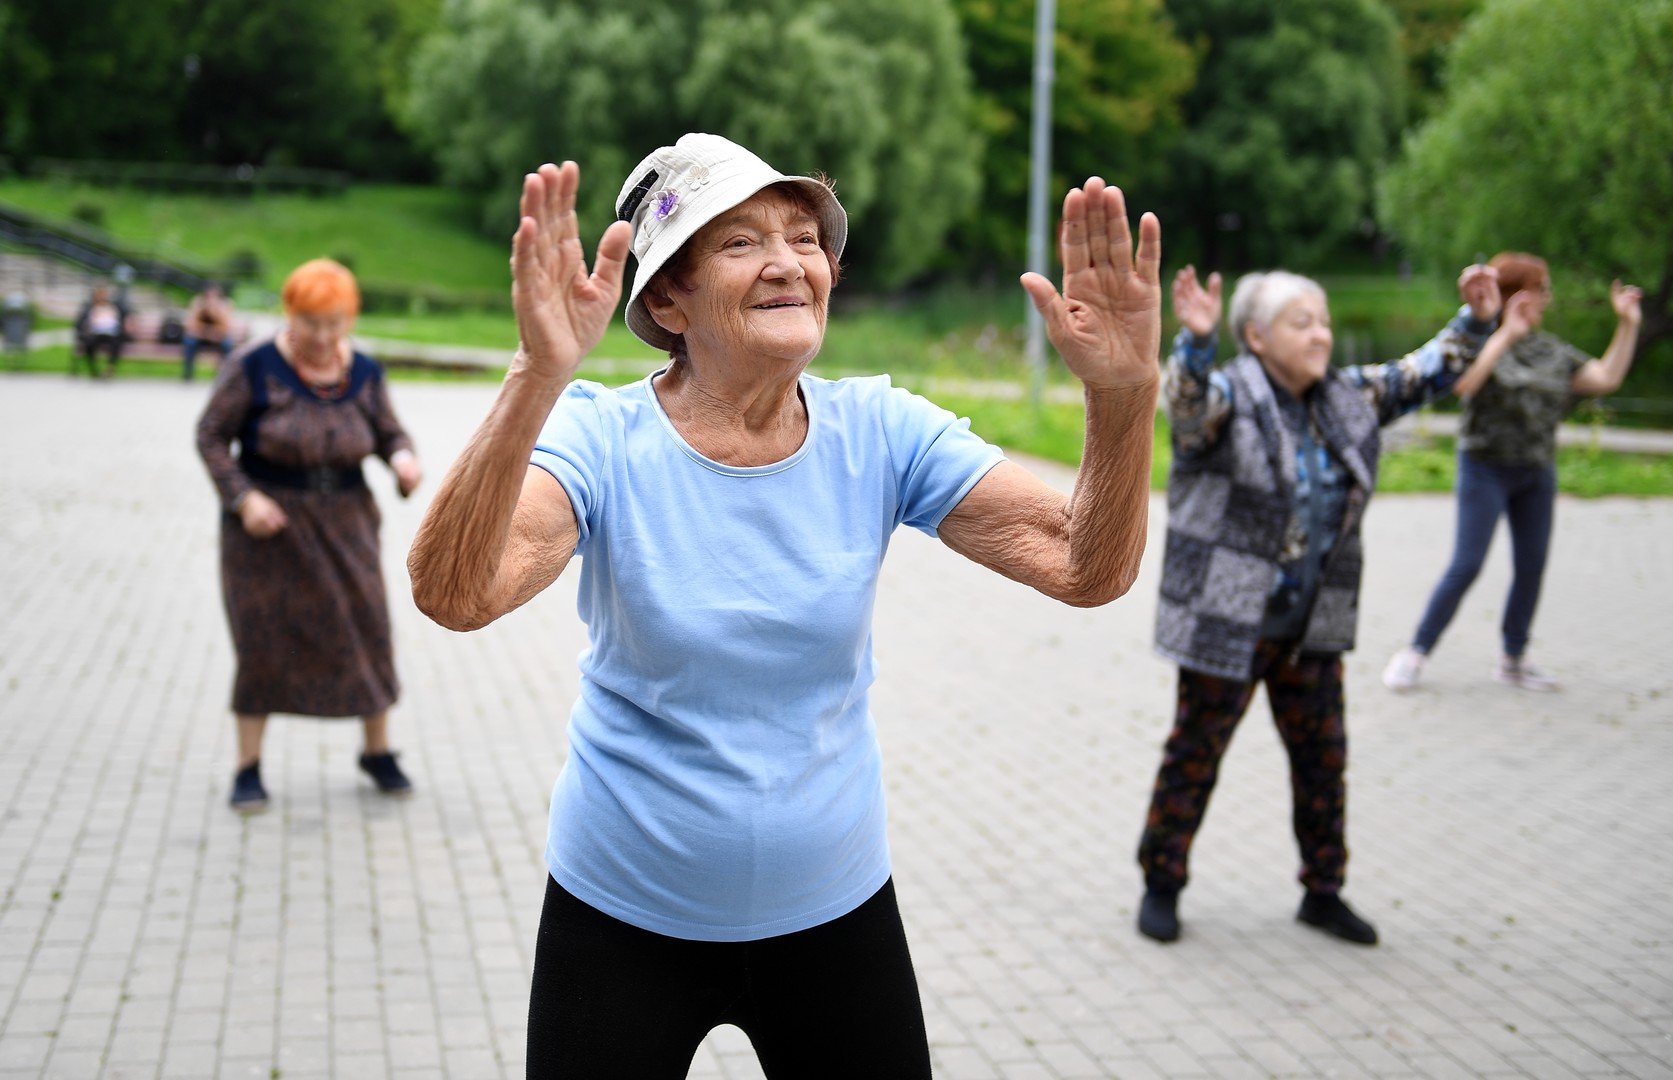 روسيا تضرب رقما قياسيا من حيث عدد المعمرين البالغين من العمر 100 عام